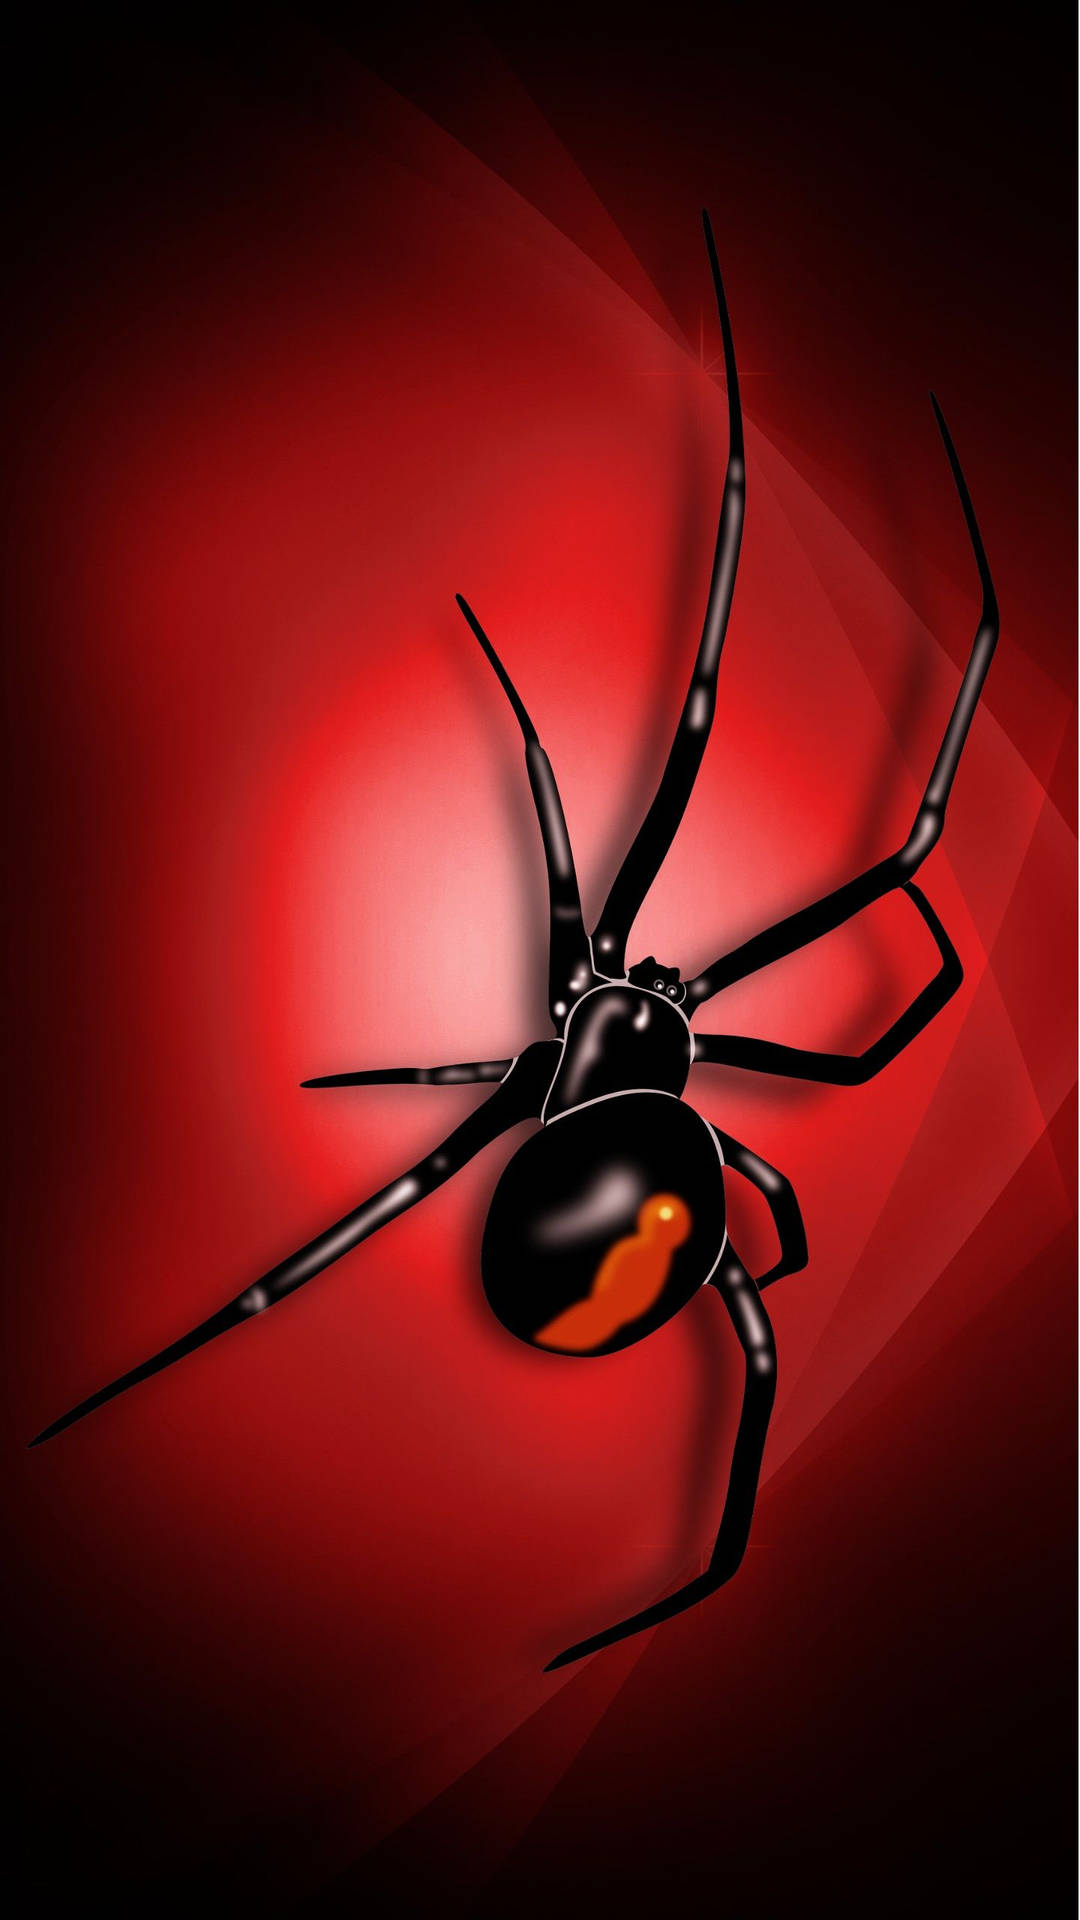 Spider Black Widow Digital Art